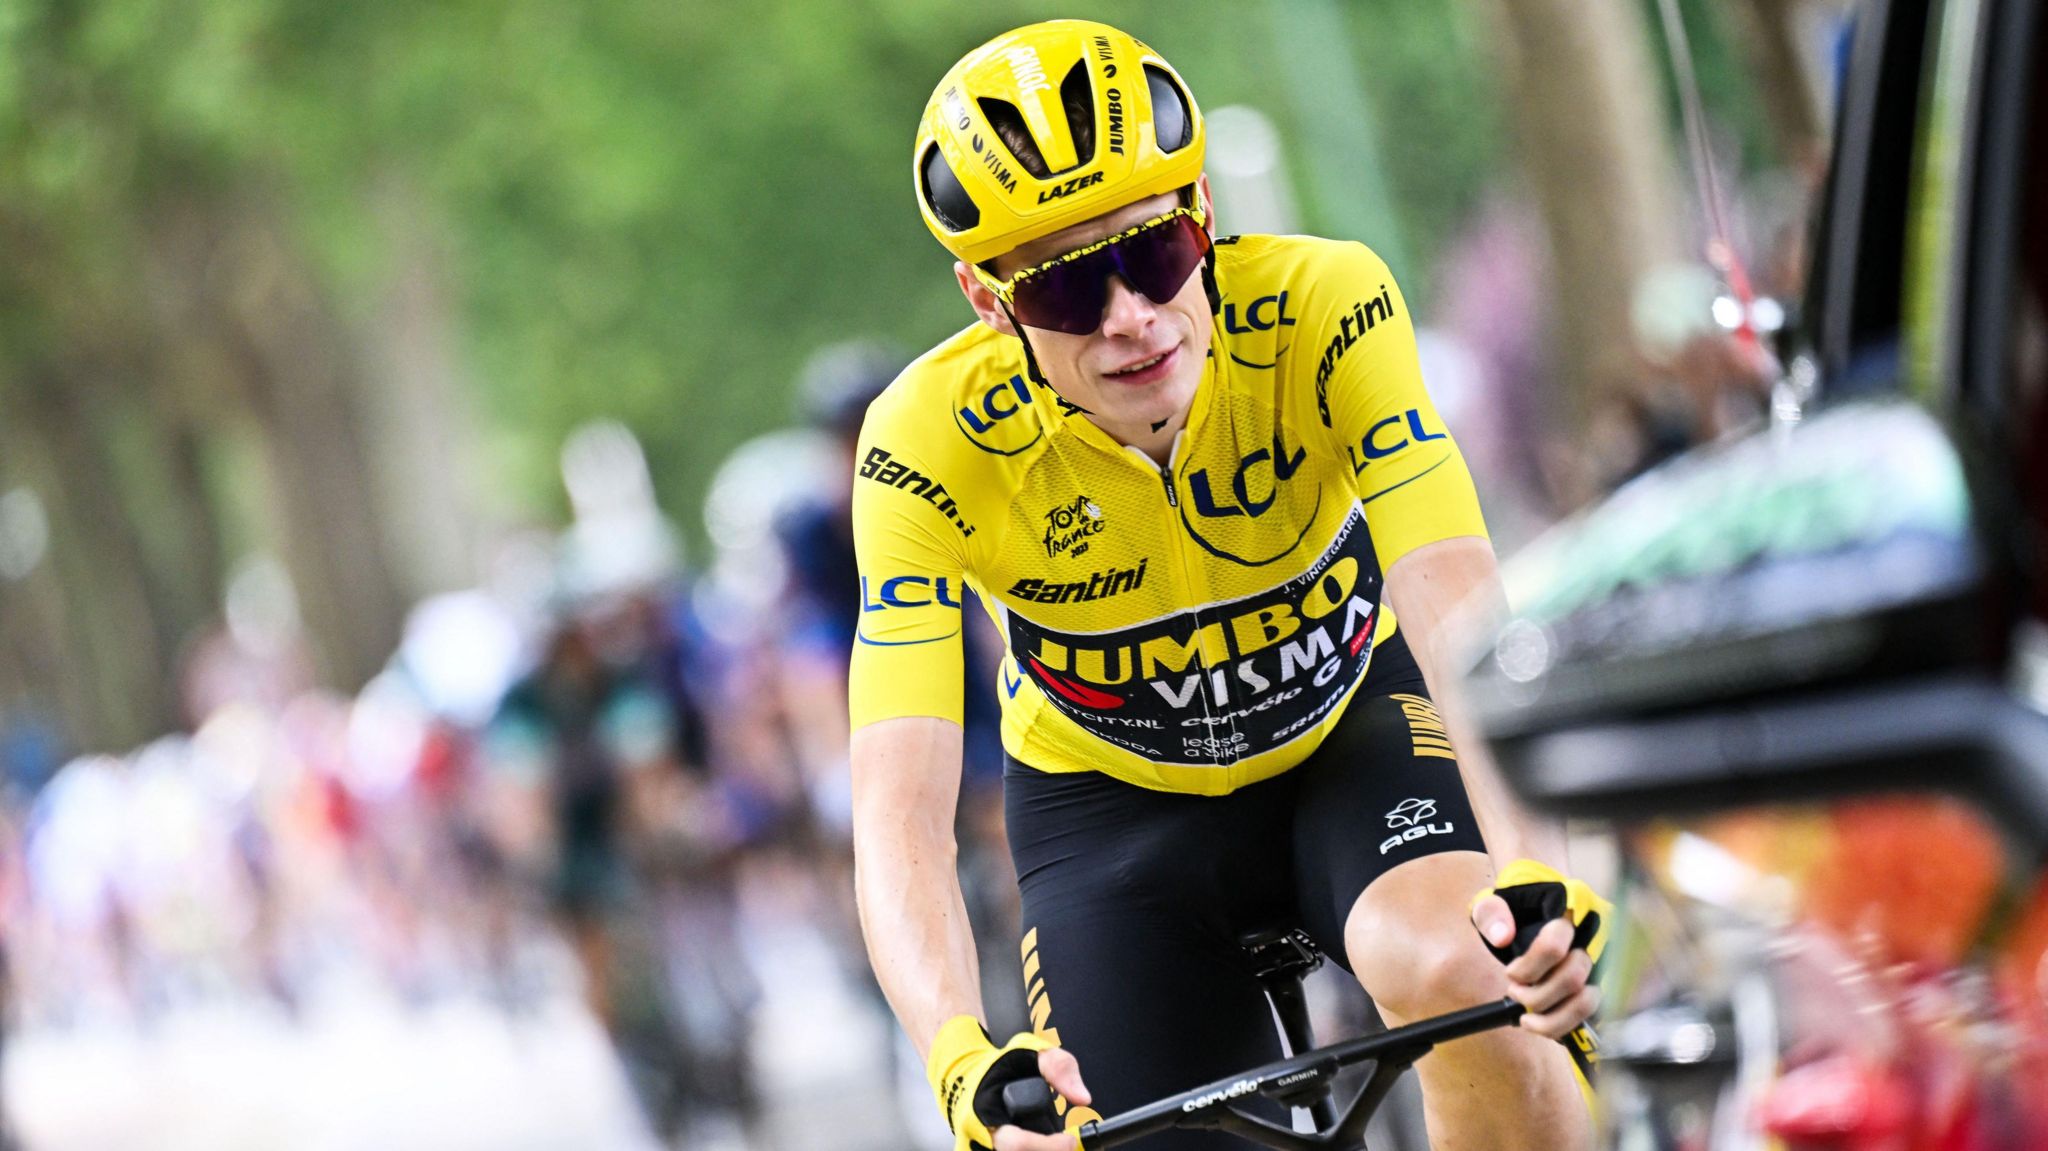 Jonas Vingegaard riding at the Tour de France